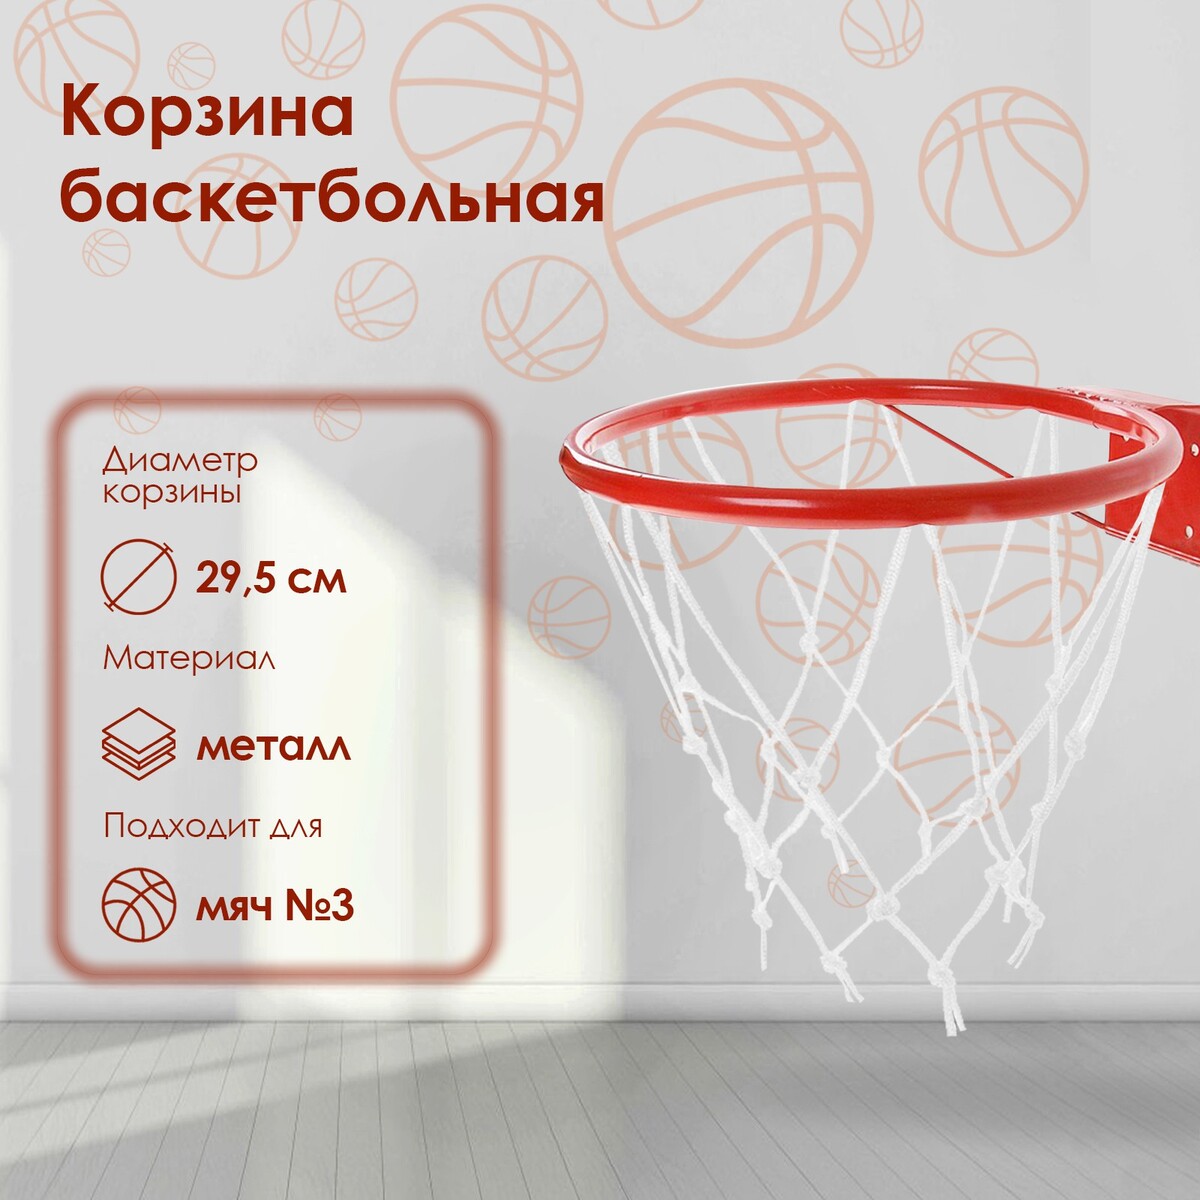 Корзина баскетбольная №3, d=295 мм, с упором и сеткой кольцо баскетбольное 3 с упором и с сеткой